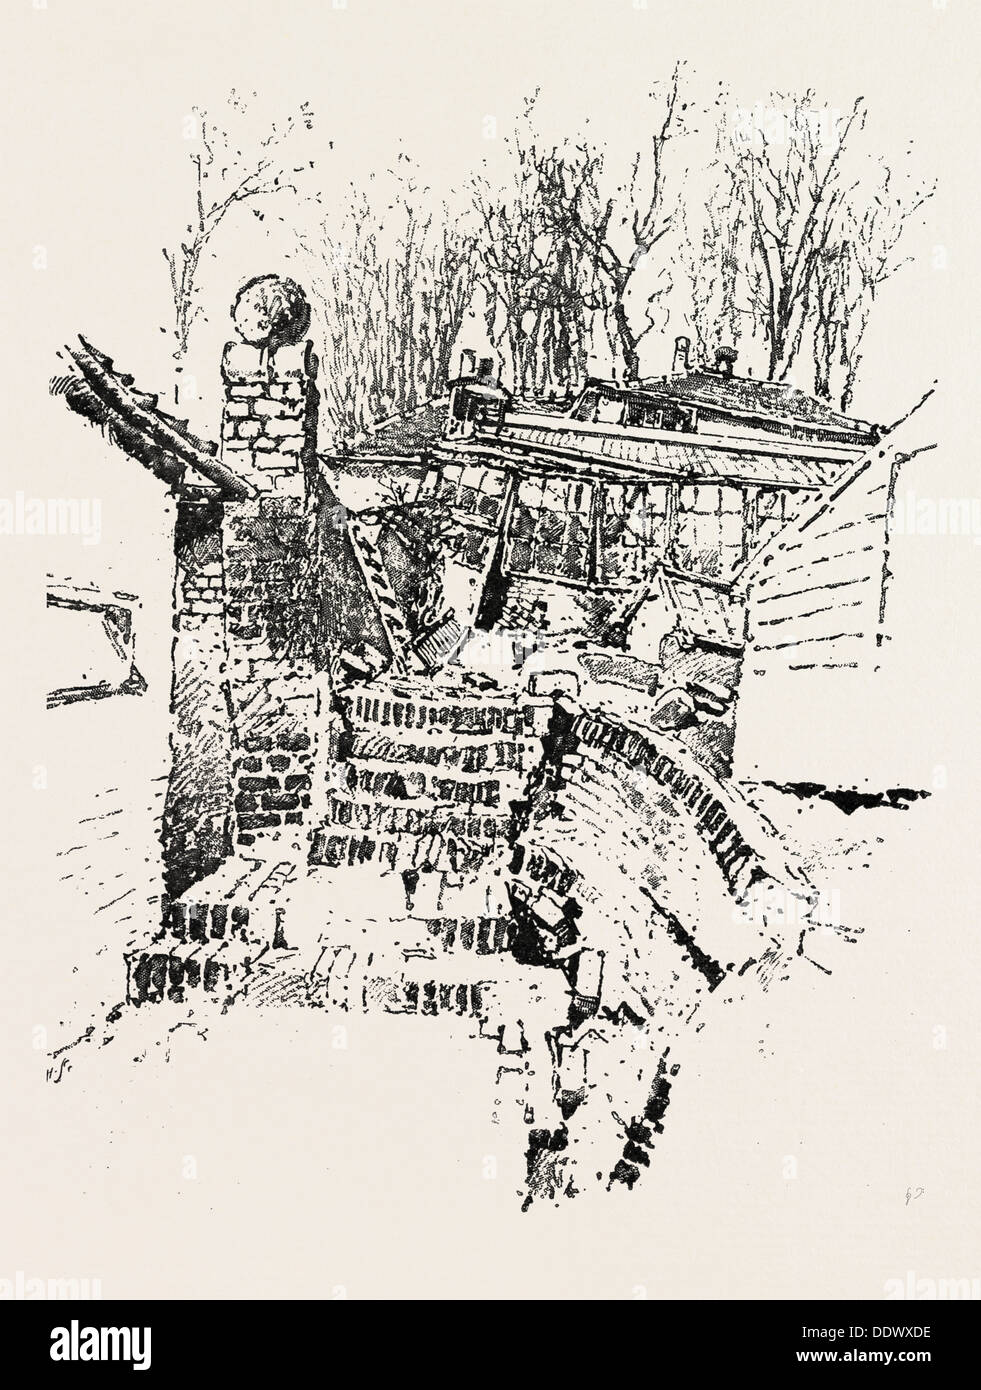 Le glissement de terrain À SANDGATE : DESTRUCTION DE PERSPECTIVE DES PÉPINIÈRES et du jardinier, UK, 1893 Gravure Banque D'Images